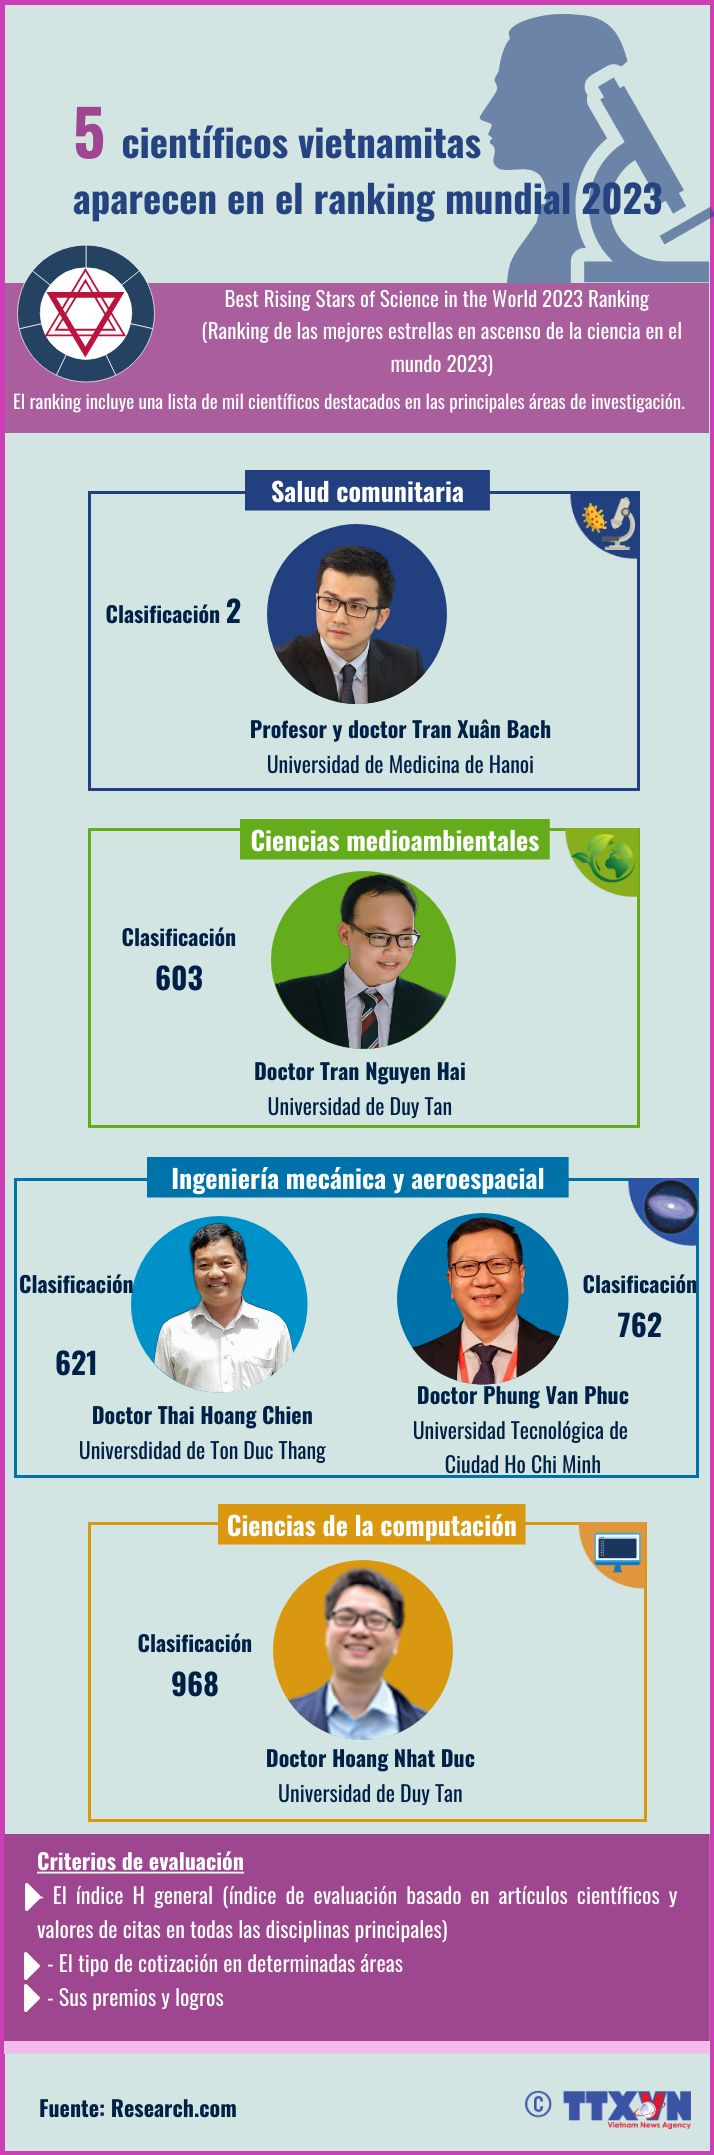 5 científicos vietnamitas aparecen en el ranking mundial 2023